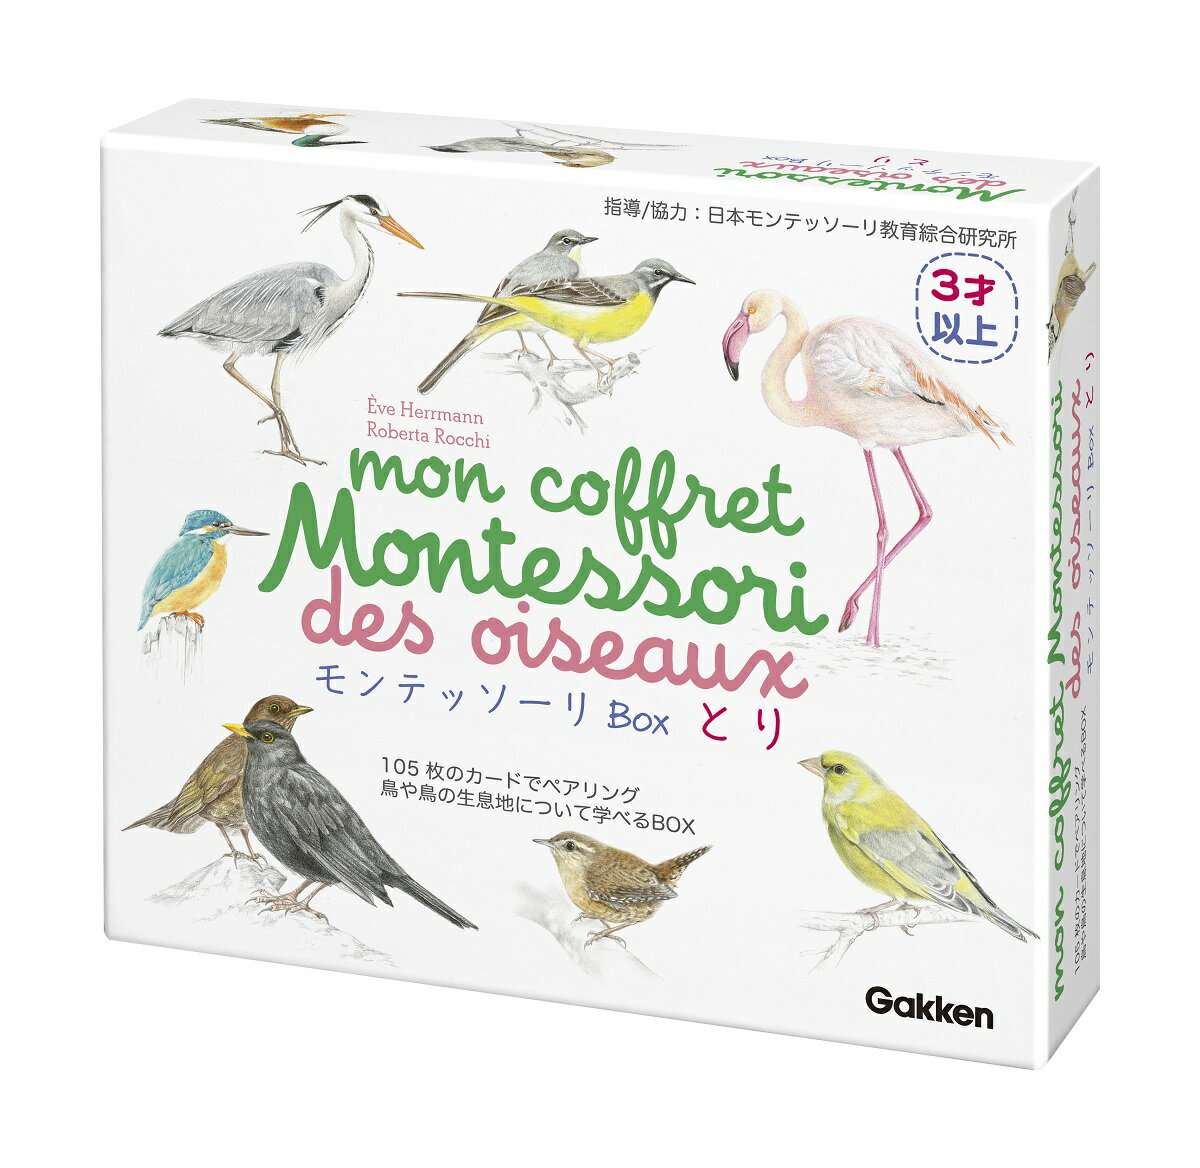  モンテッソーリBox とり 83015 知育玩具 モンテッソーリ 教育 鳥 生息地 空間認識力 カード 3歳から ギフト 誕生日 学研ステイフル 